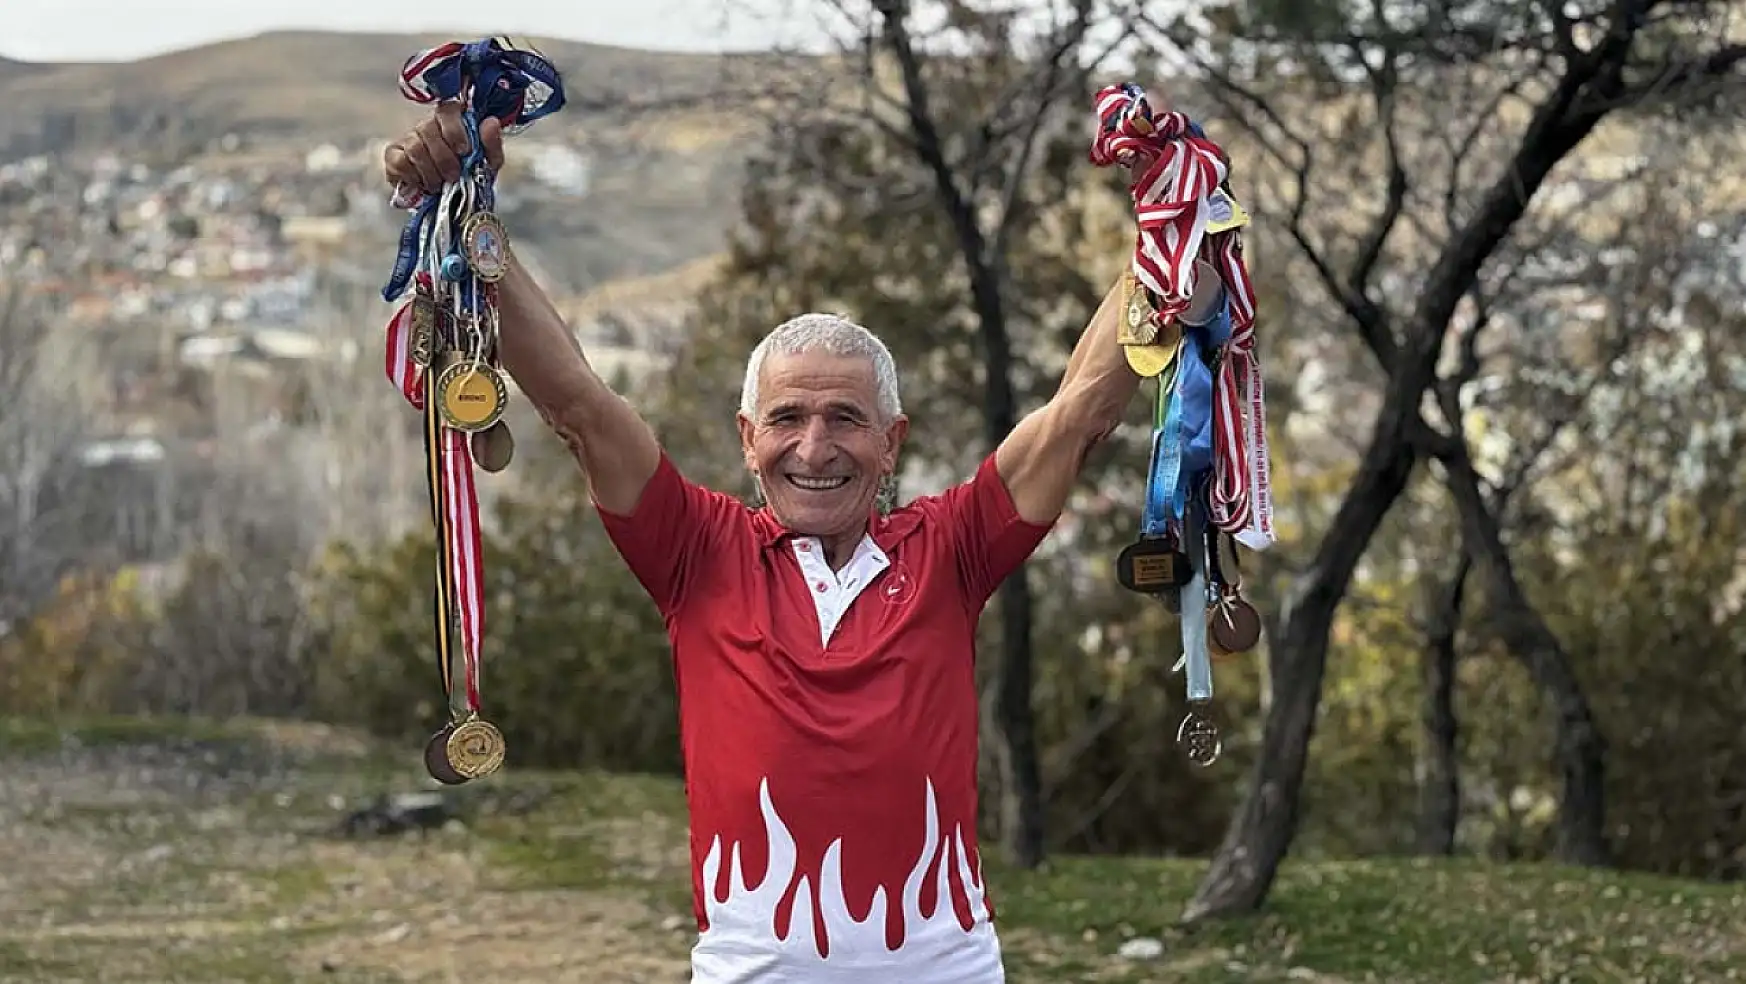 Konya'da 71 yaşındaki atlet, görenleri şaşkına çeviriyor!